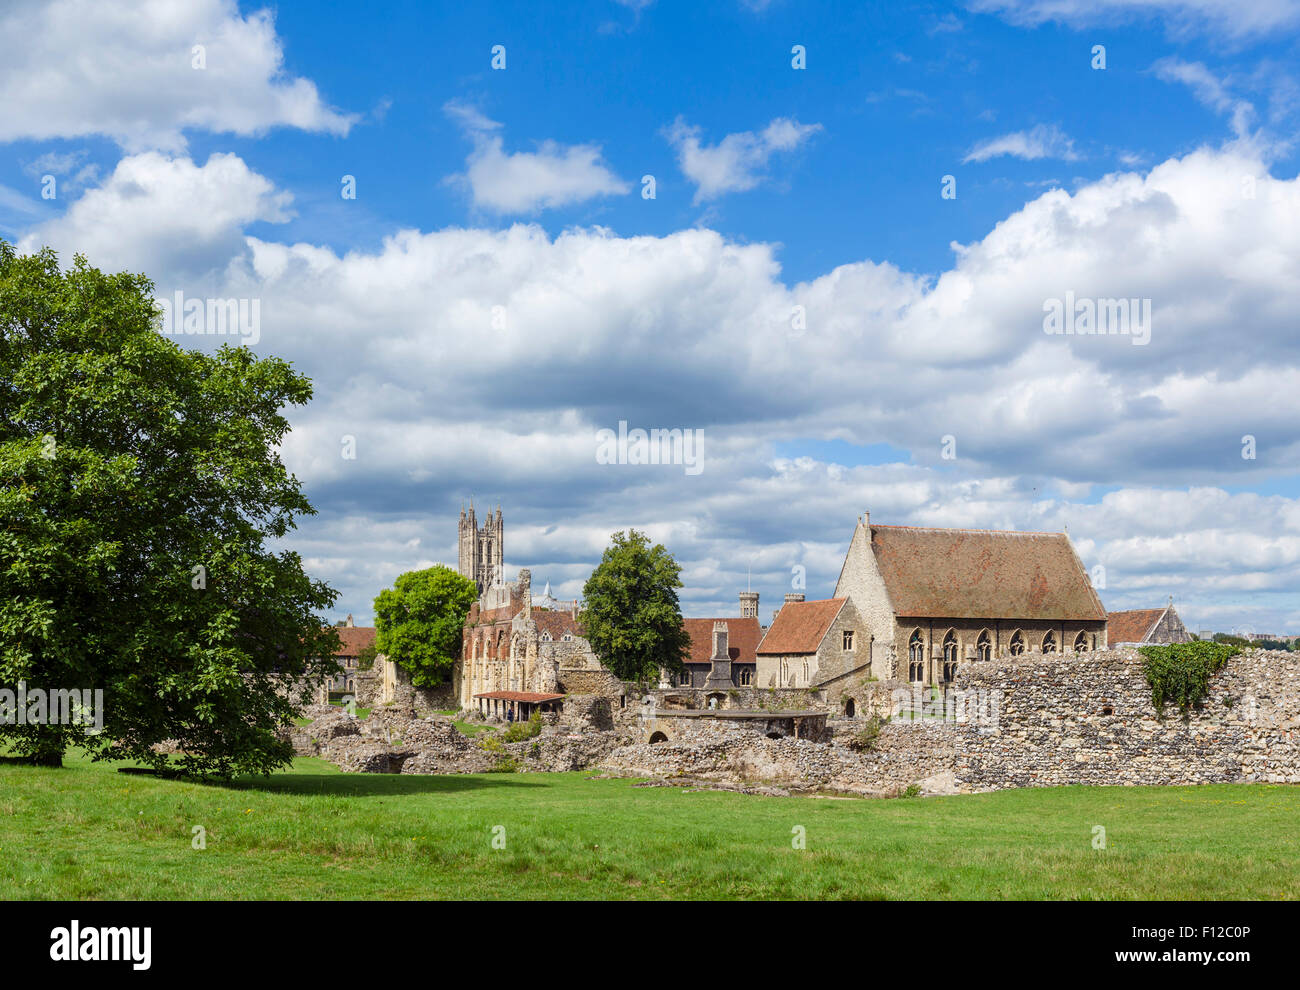 Die Ruinen der Abtei St. Augstine mit dem Turm der Kathedrale von Canterbury hinter, Canterbury, Kent, England, UK Stockfoto